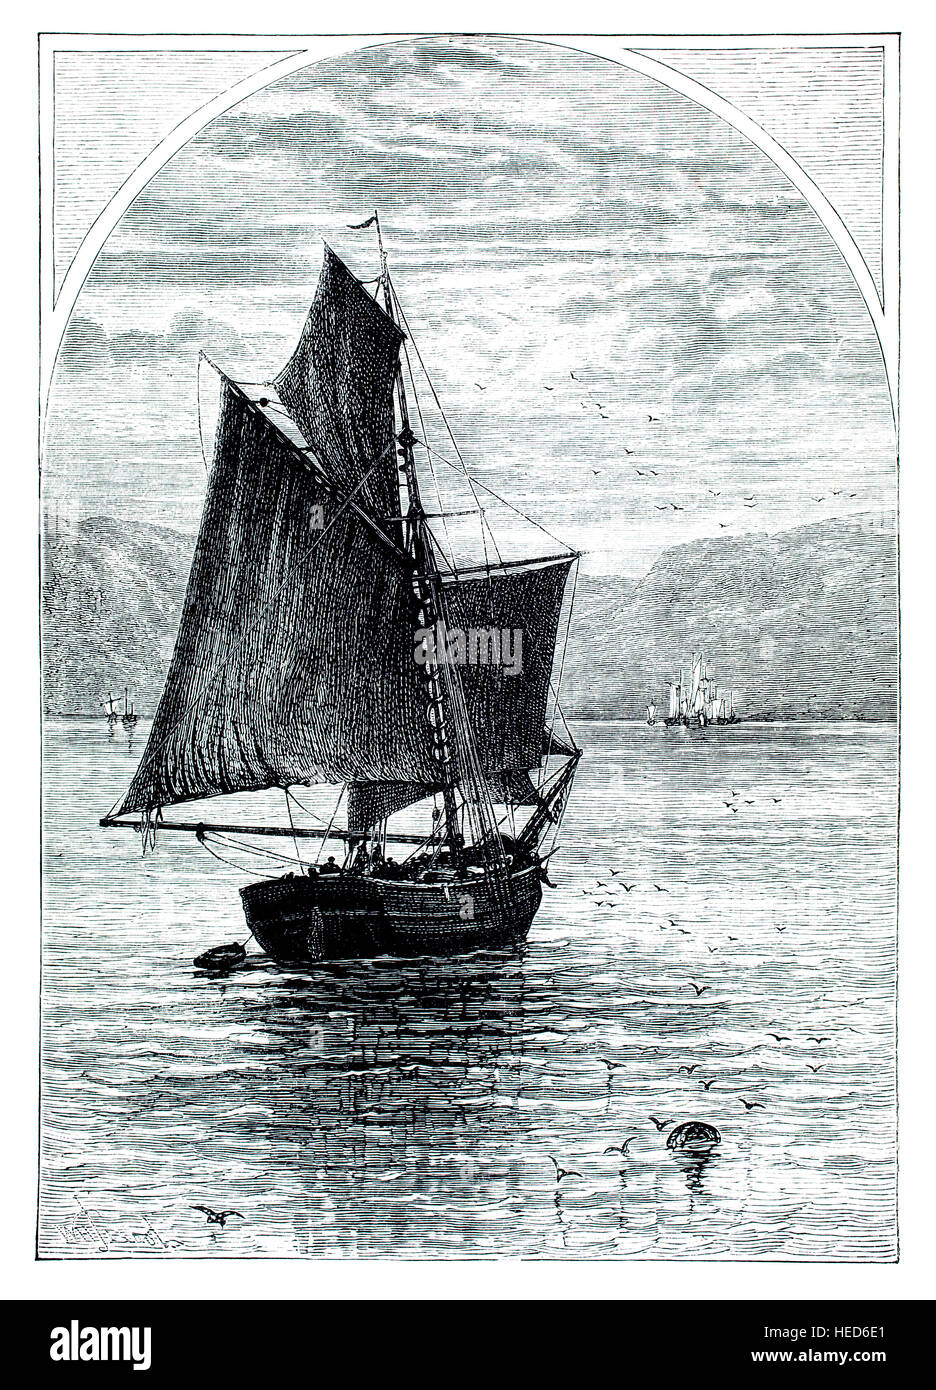 19e siècle, les navires à voile côtière, illustration de 1884 Chatterbox papier hebdomadaire pour les enfants Banque D'Images